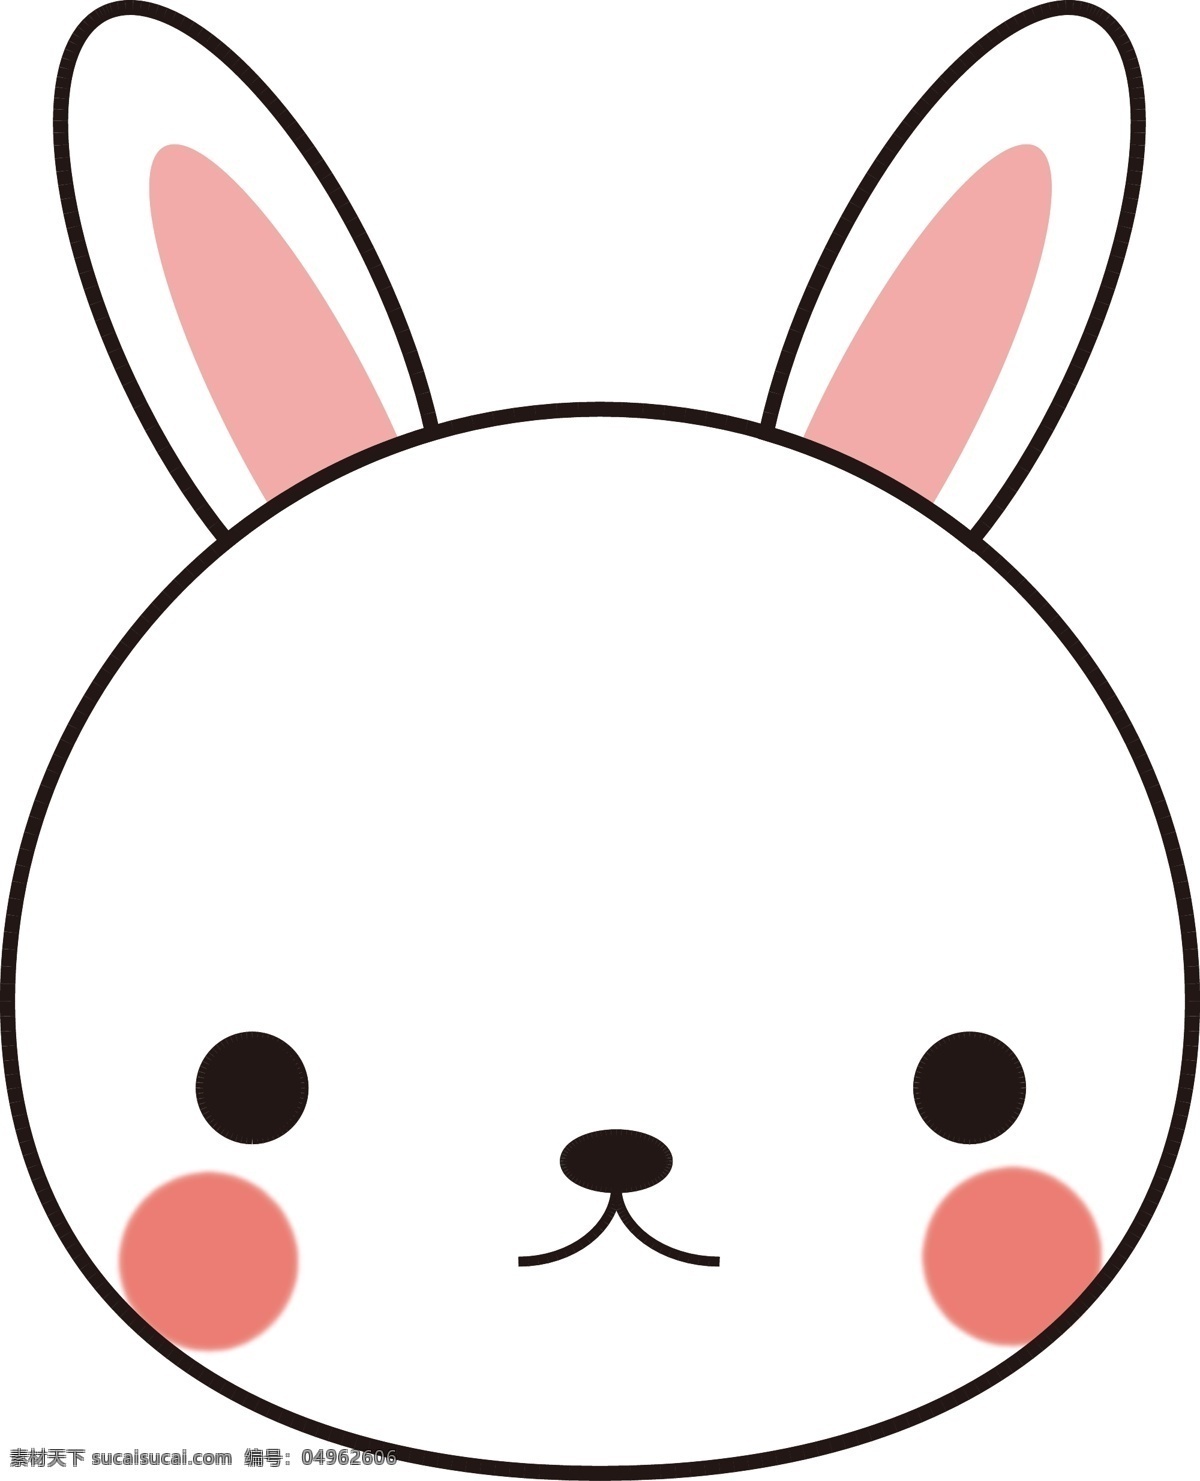 卡通兔子 表情包 手绘兔子 卡通小兔子 可爱兔子 可爱小兔子 可爱小白兔 兔子素材 生肖兔 矢量兔子 兔子插画 兔子 小白兔 兔子表情包 小白兔表情包 卡通小白兔 手绘小白兔 矢量小白兔 小白兔插画 卡通设计